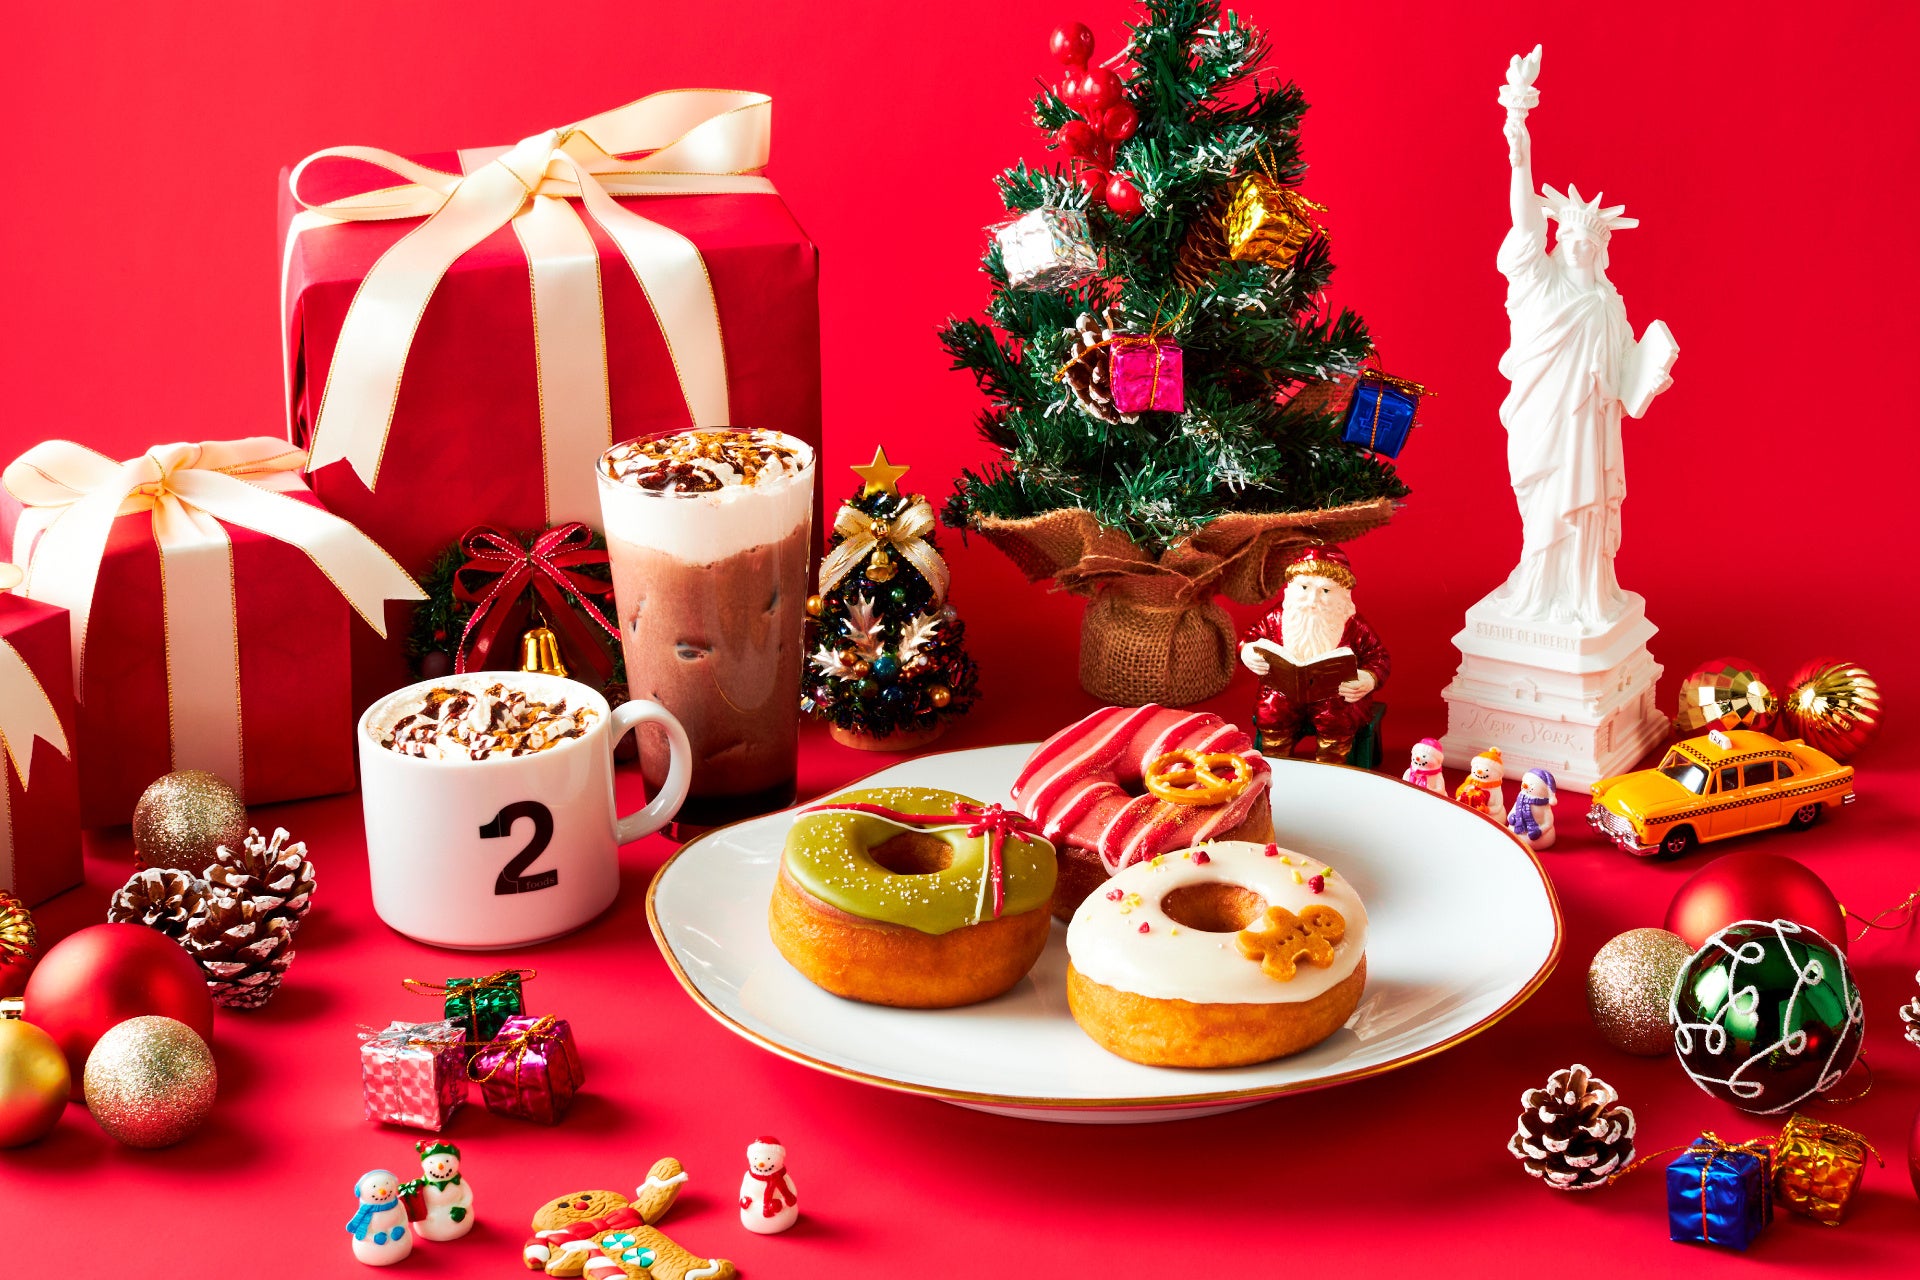 プラントベースフードブランド「2foods」から「NewYork Winter Holiday !!」をテーマにクリスマスのきらびやかさを表現したワクワク感・遊び心溢れる冬メニュー11月1日発売！